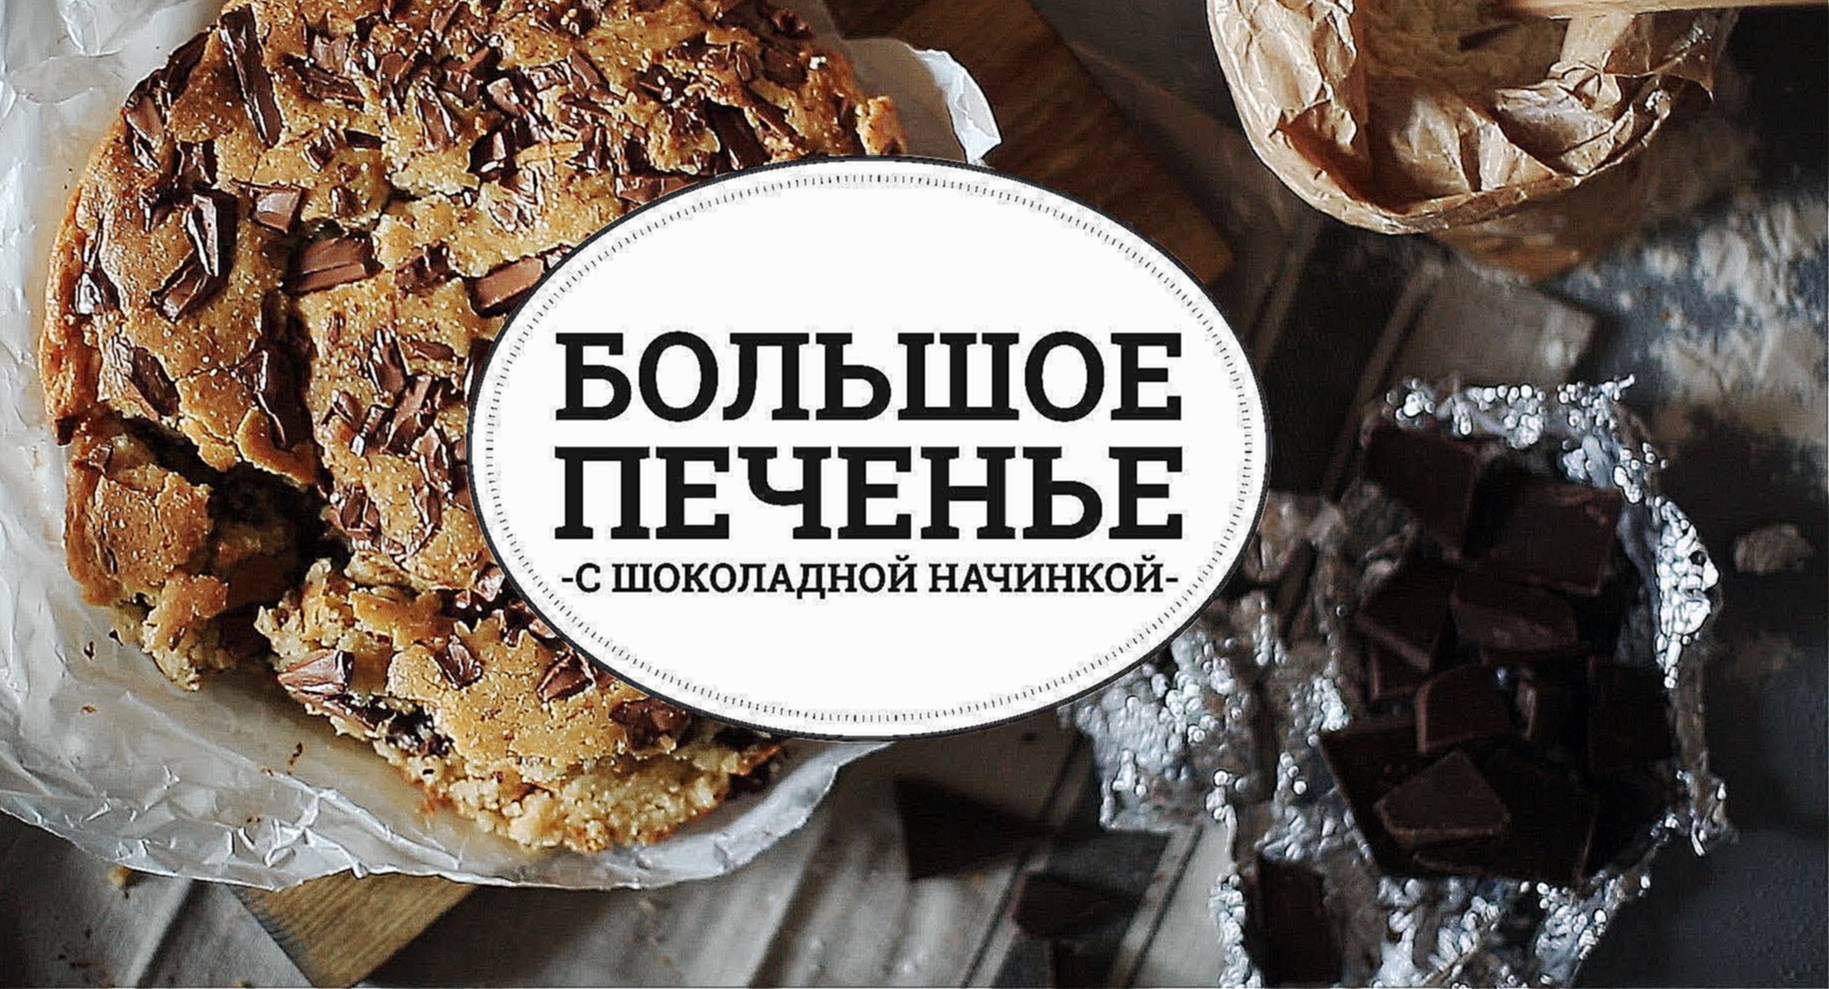 Большое печенье с шоколадной начинкой [sweet & flour] 